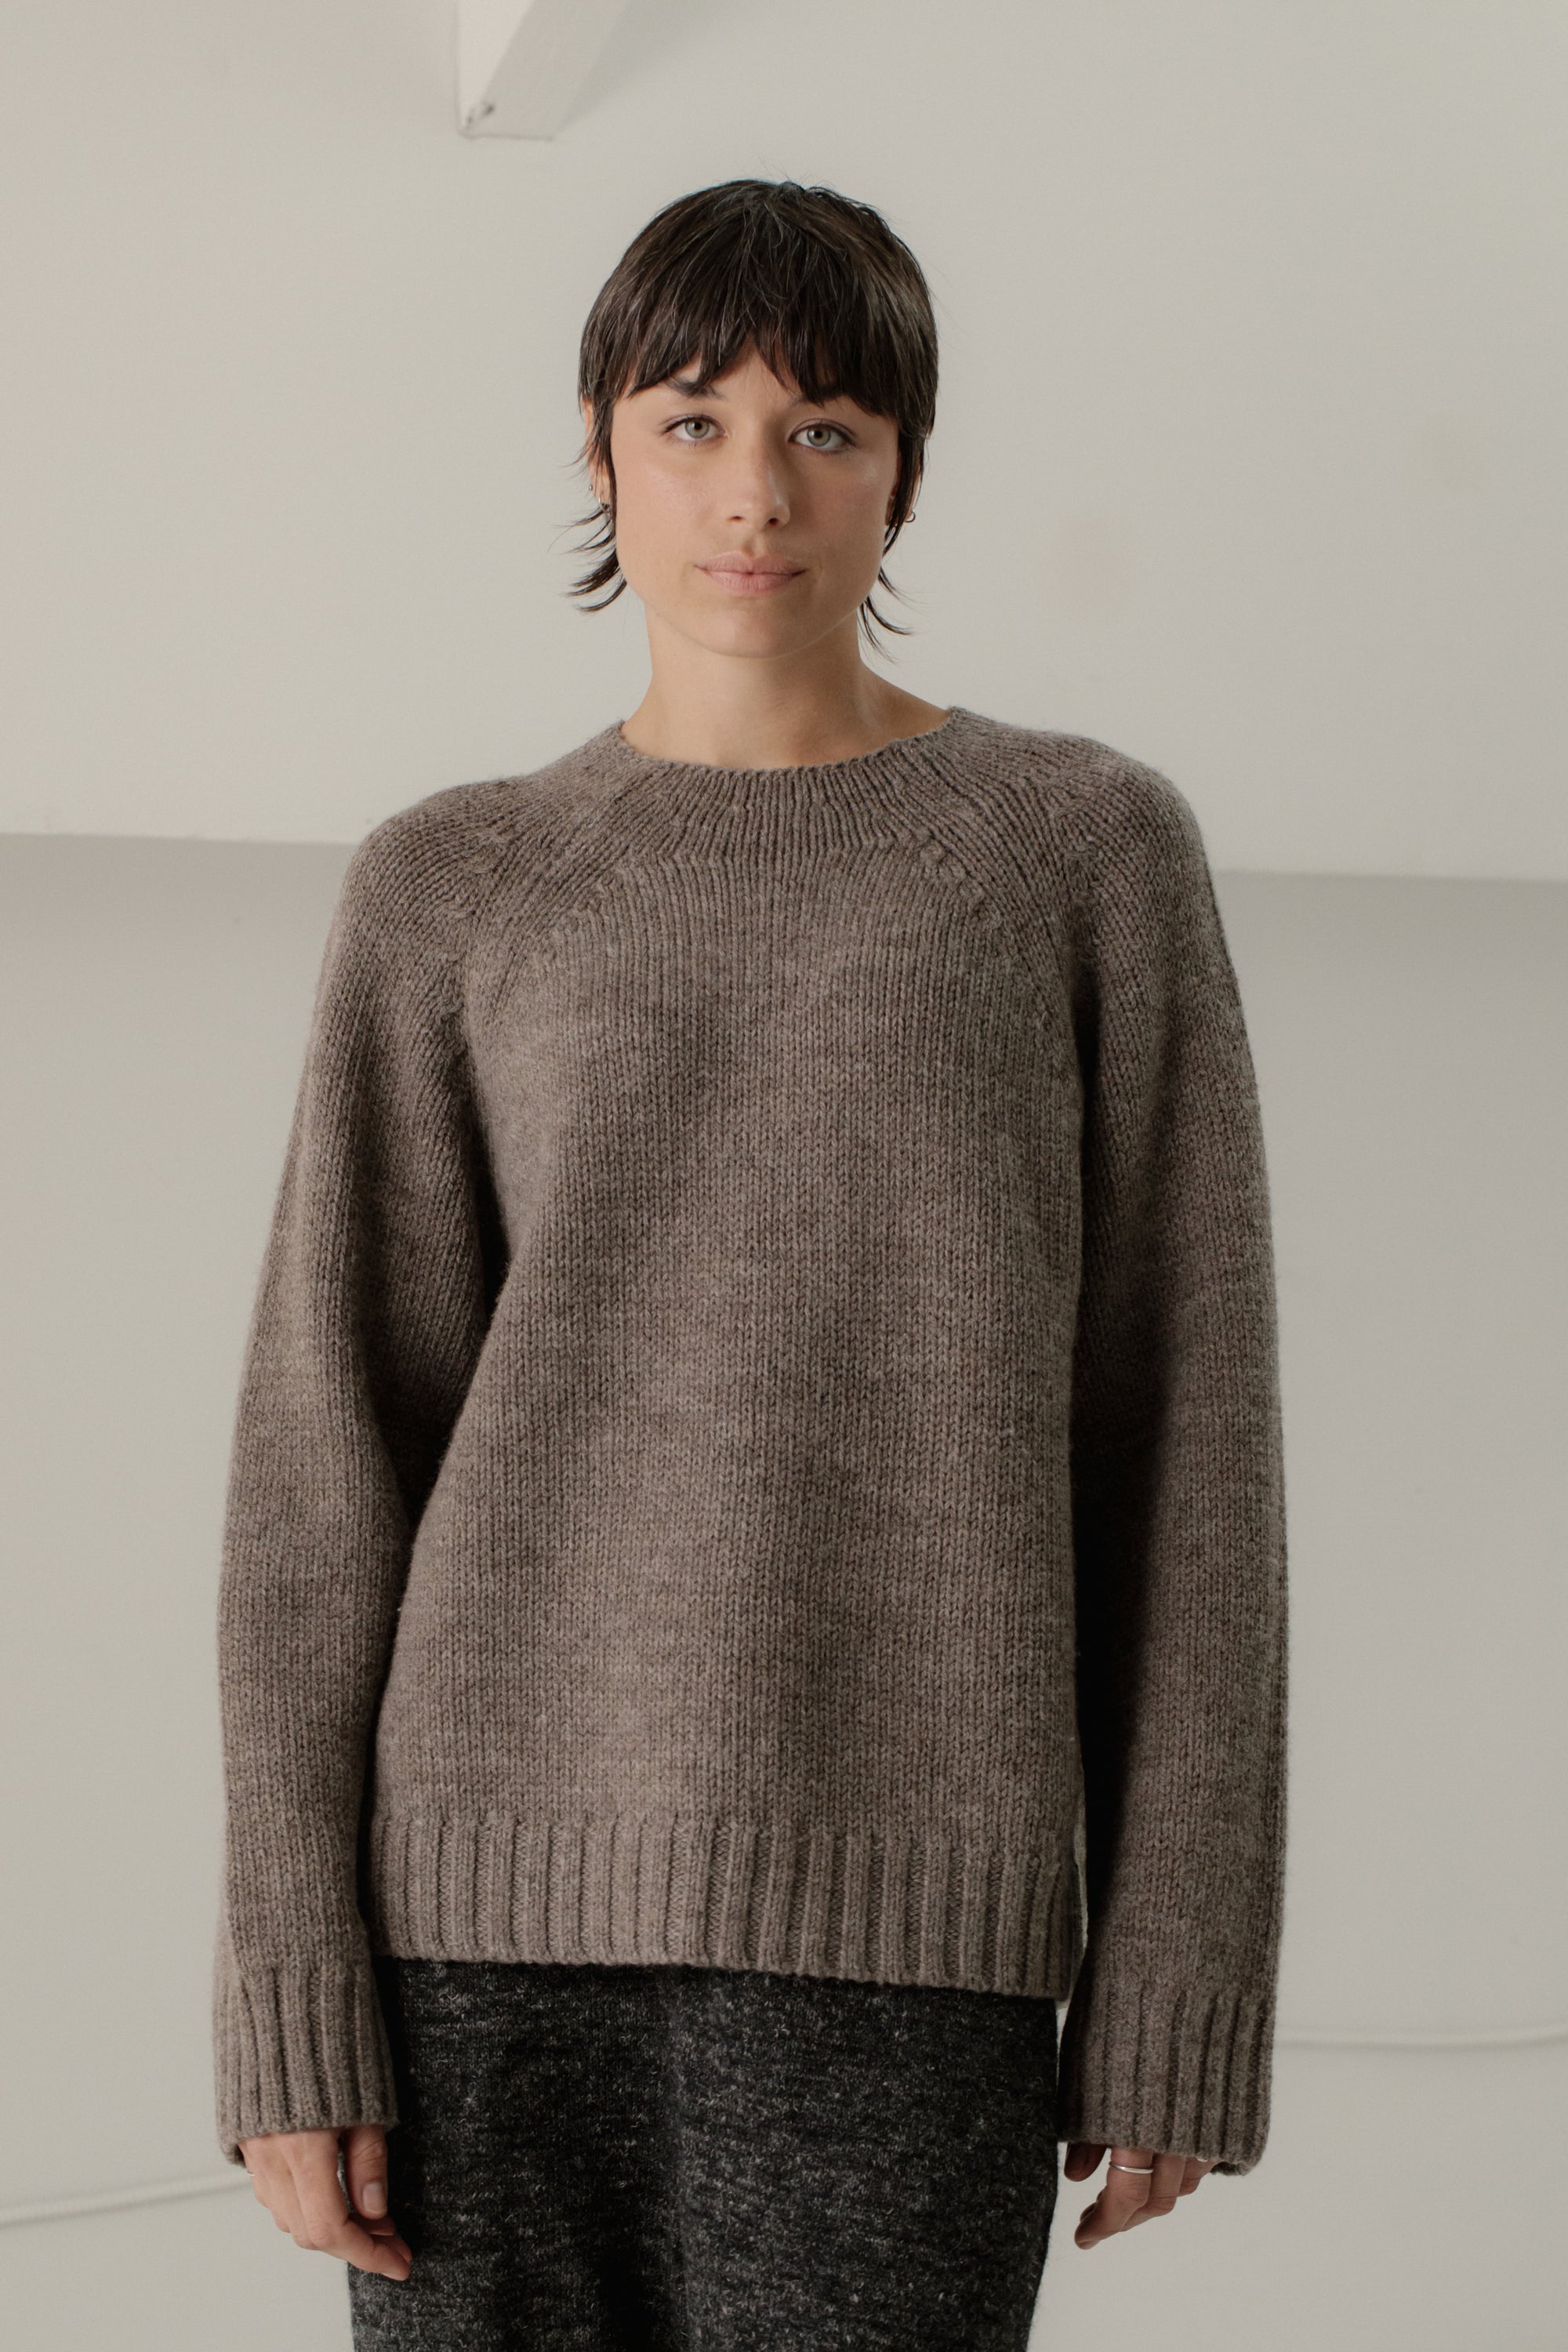 Bare Knitwear Channel Sweater / Root